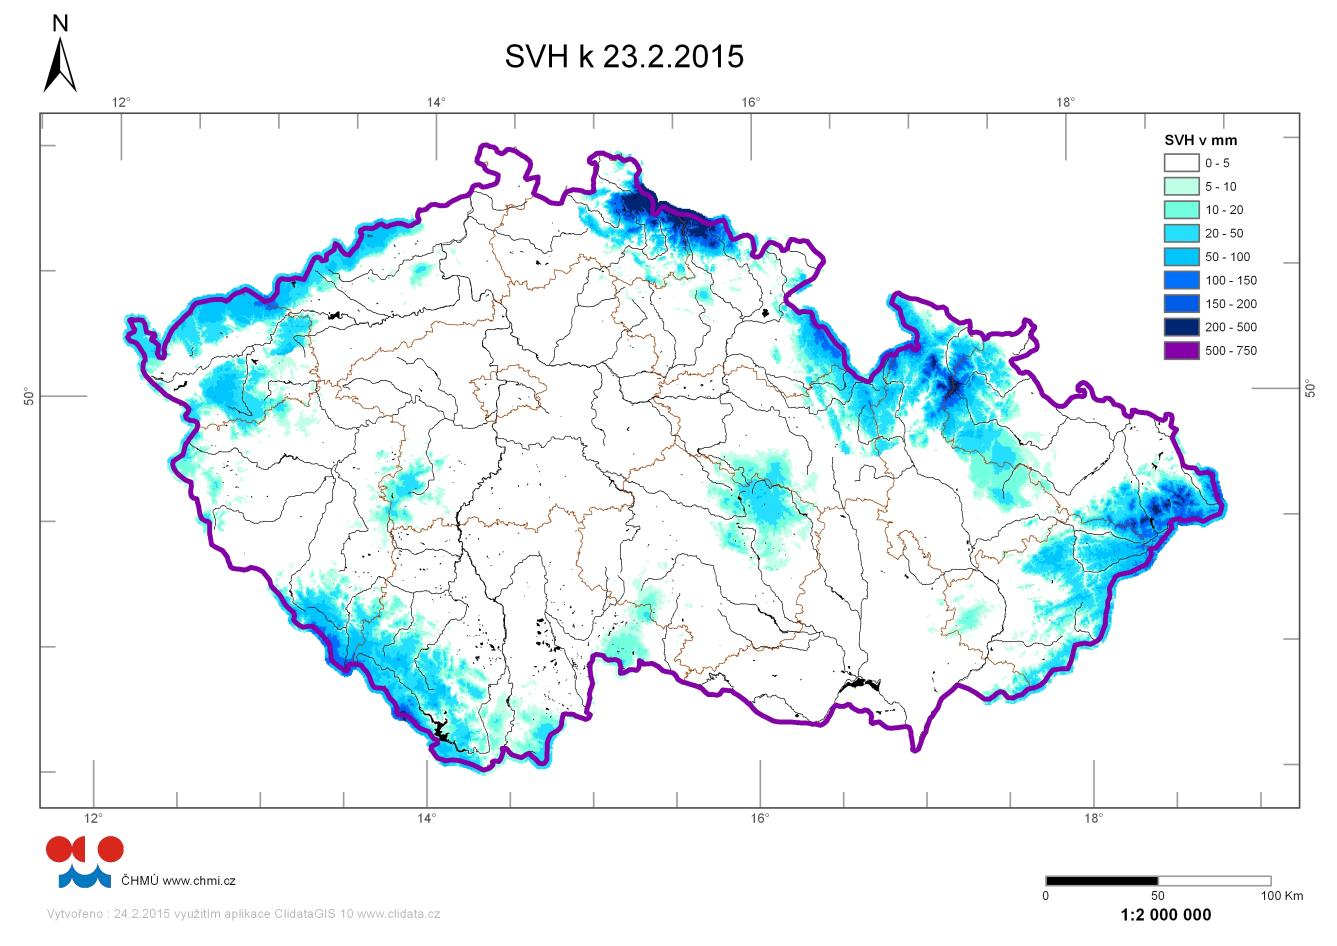 Závěrovými profily Moravy ve Strážnici a Dyje v Nových Mlýnech průměrně odtékalo 84, resp. 79 % Q II. Průměrná teplota vody v tocích dosahovala od 1,0 do 4,8 C.